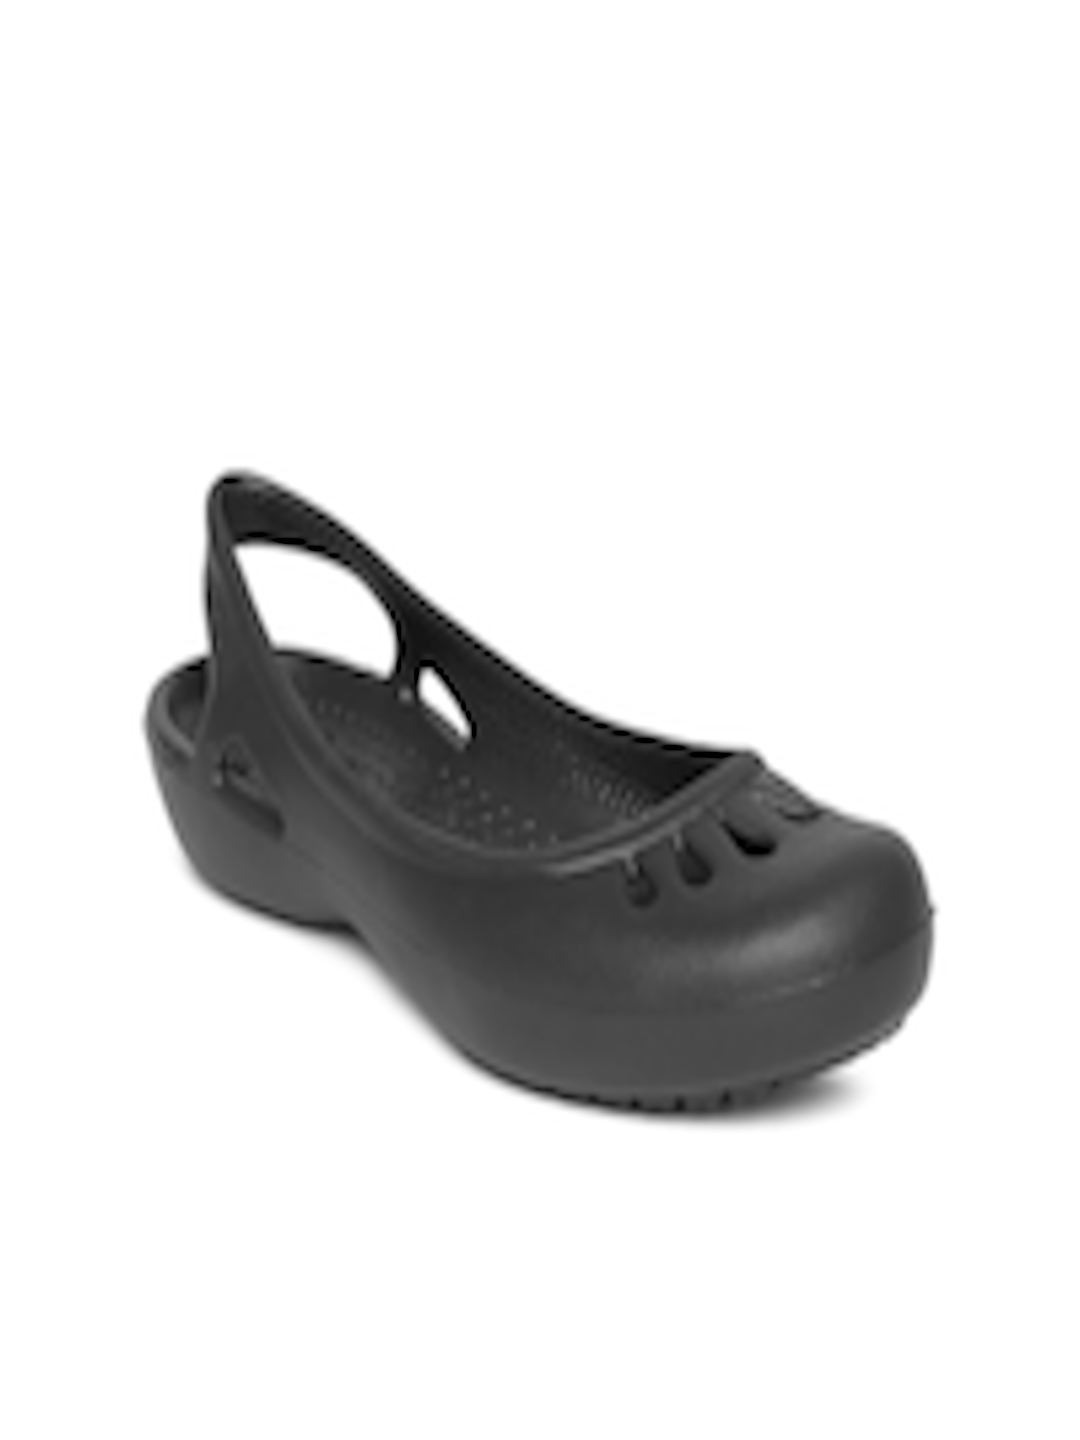 Buy Crocs Malindi Women Black Flat Shoes - Flats for Women 719906 | Myntra